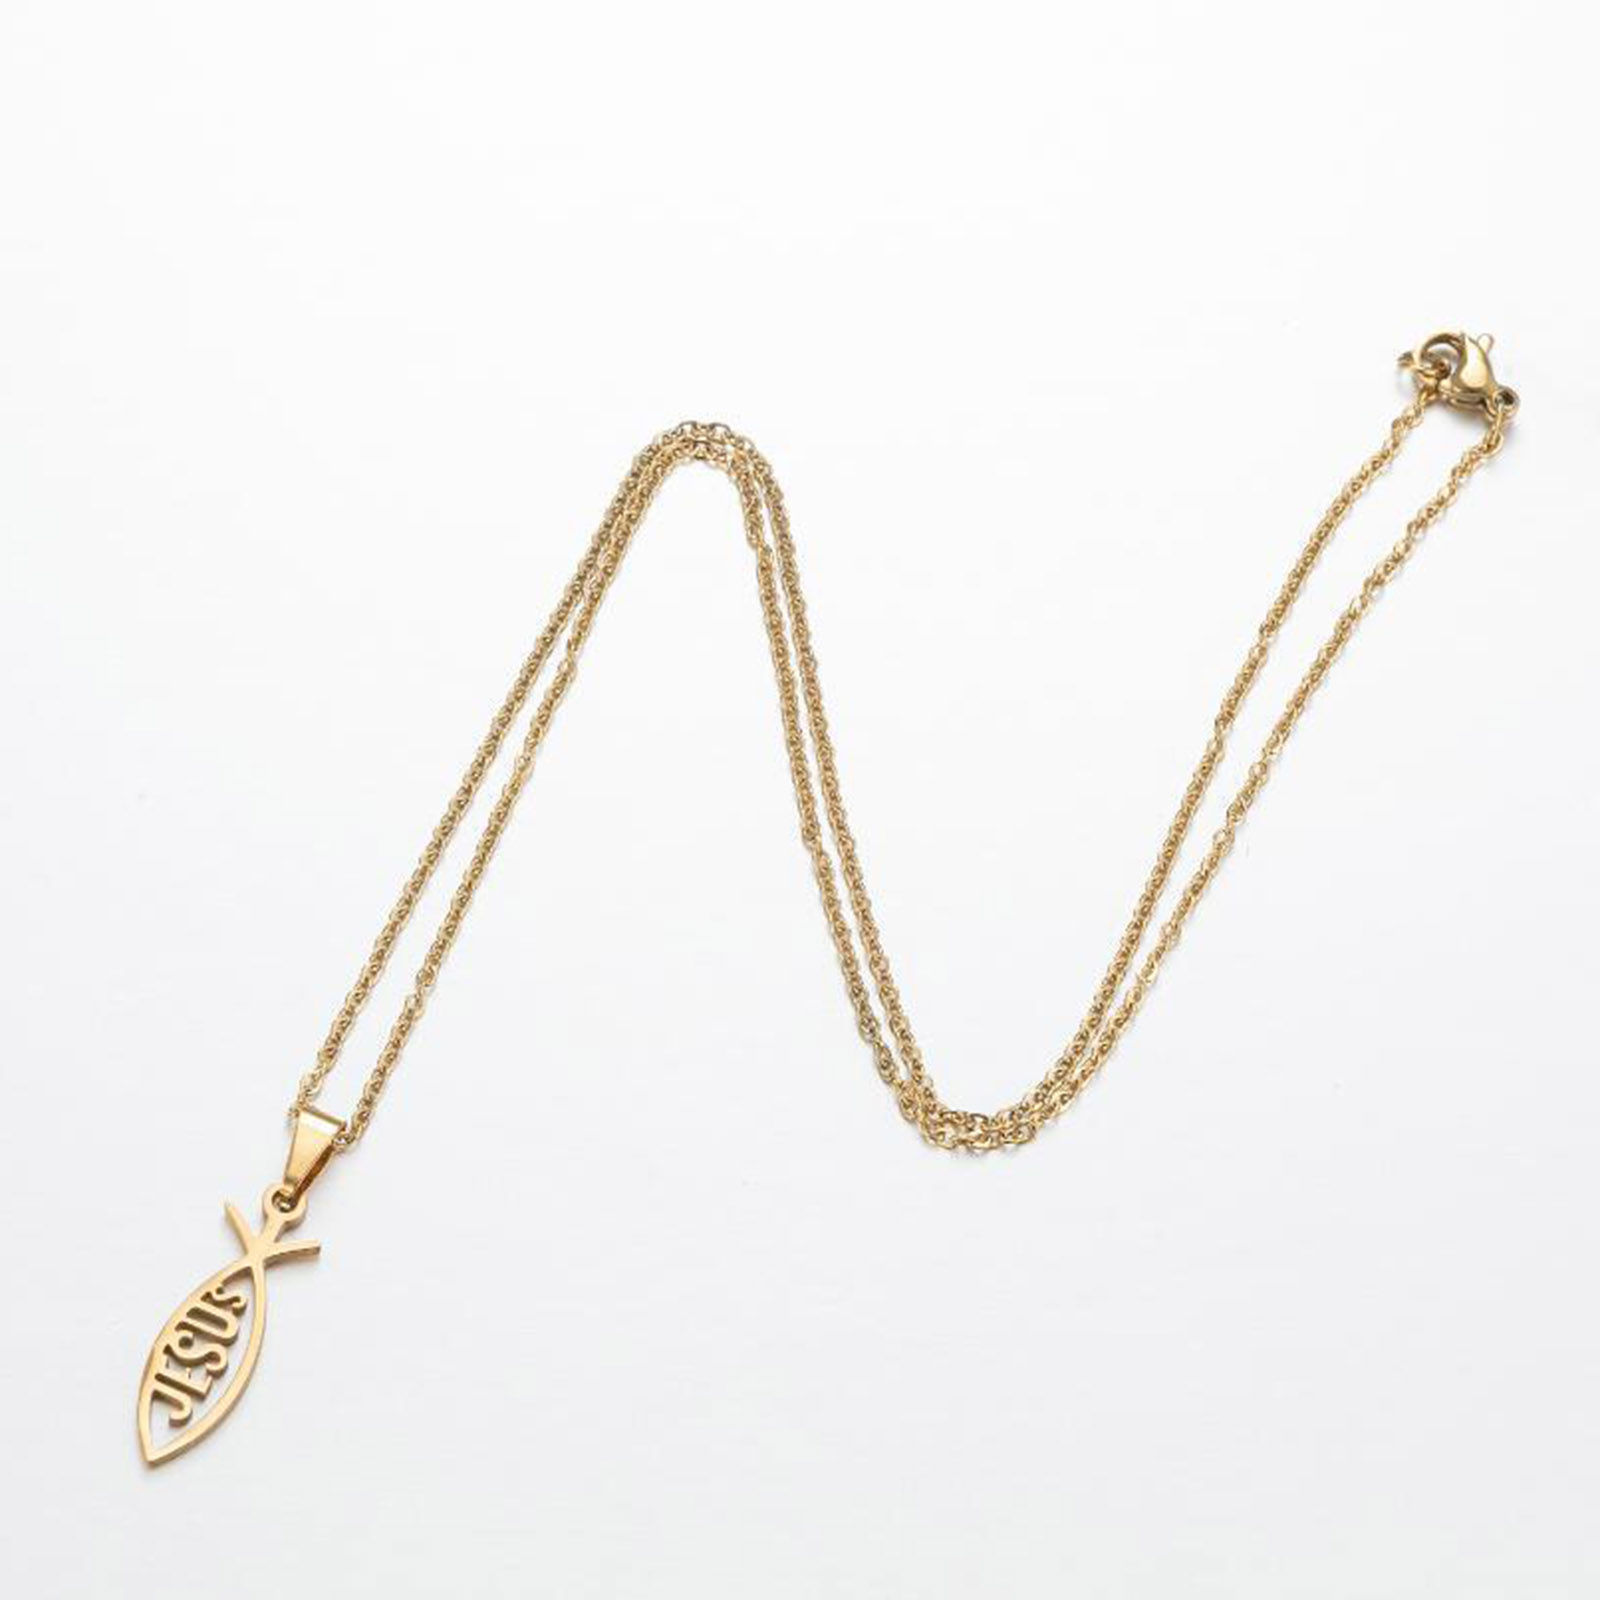 Bild von 201 Edelstahl Stilvoll Gliederkette Kette Halskette Bunt 45cm lang, 1 Strang